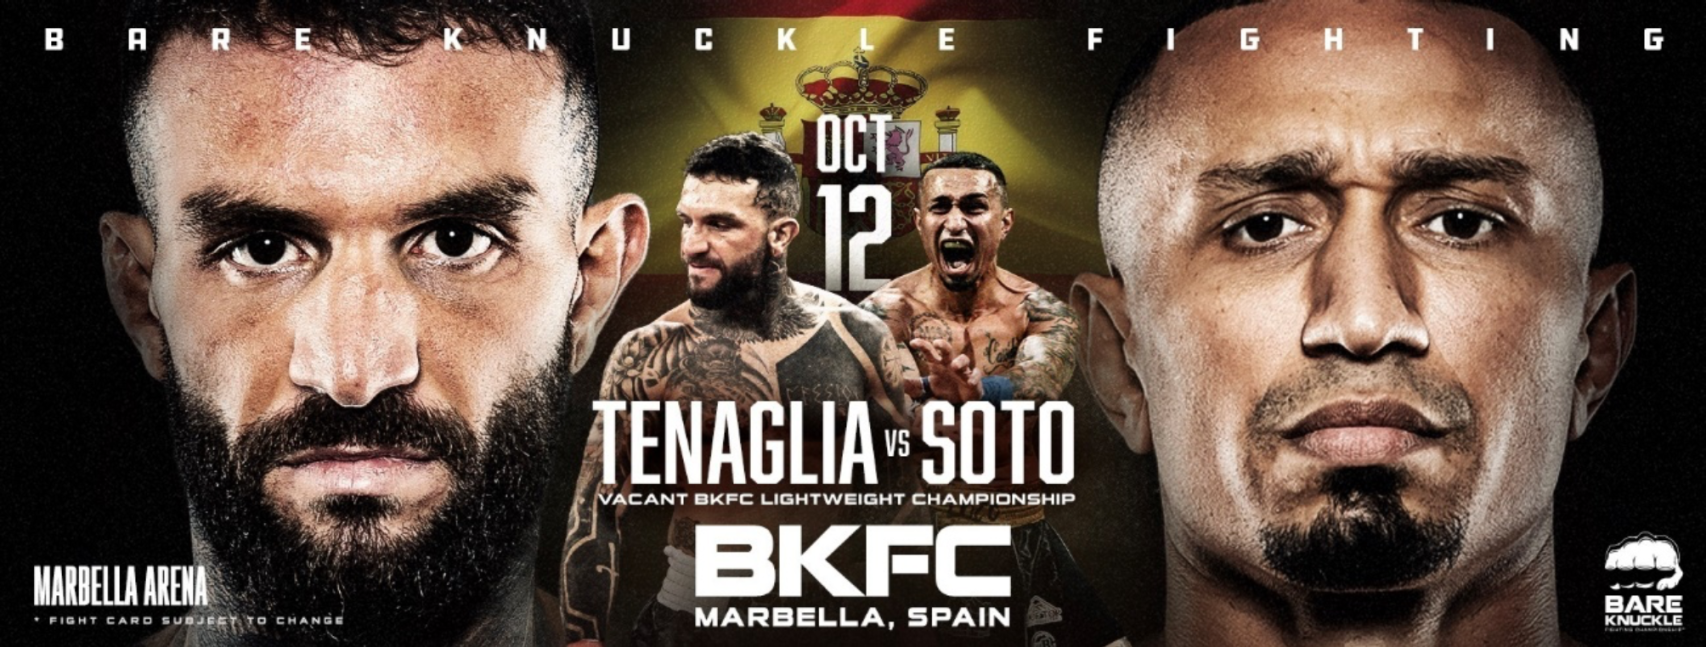 Cartel promocional de Bare Knuckle Fighting Championship en Marbella